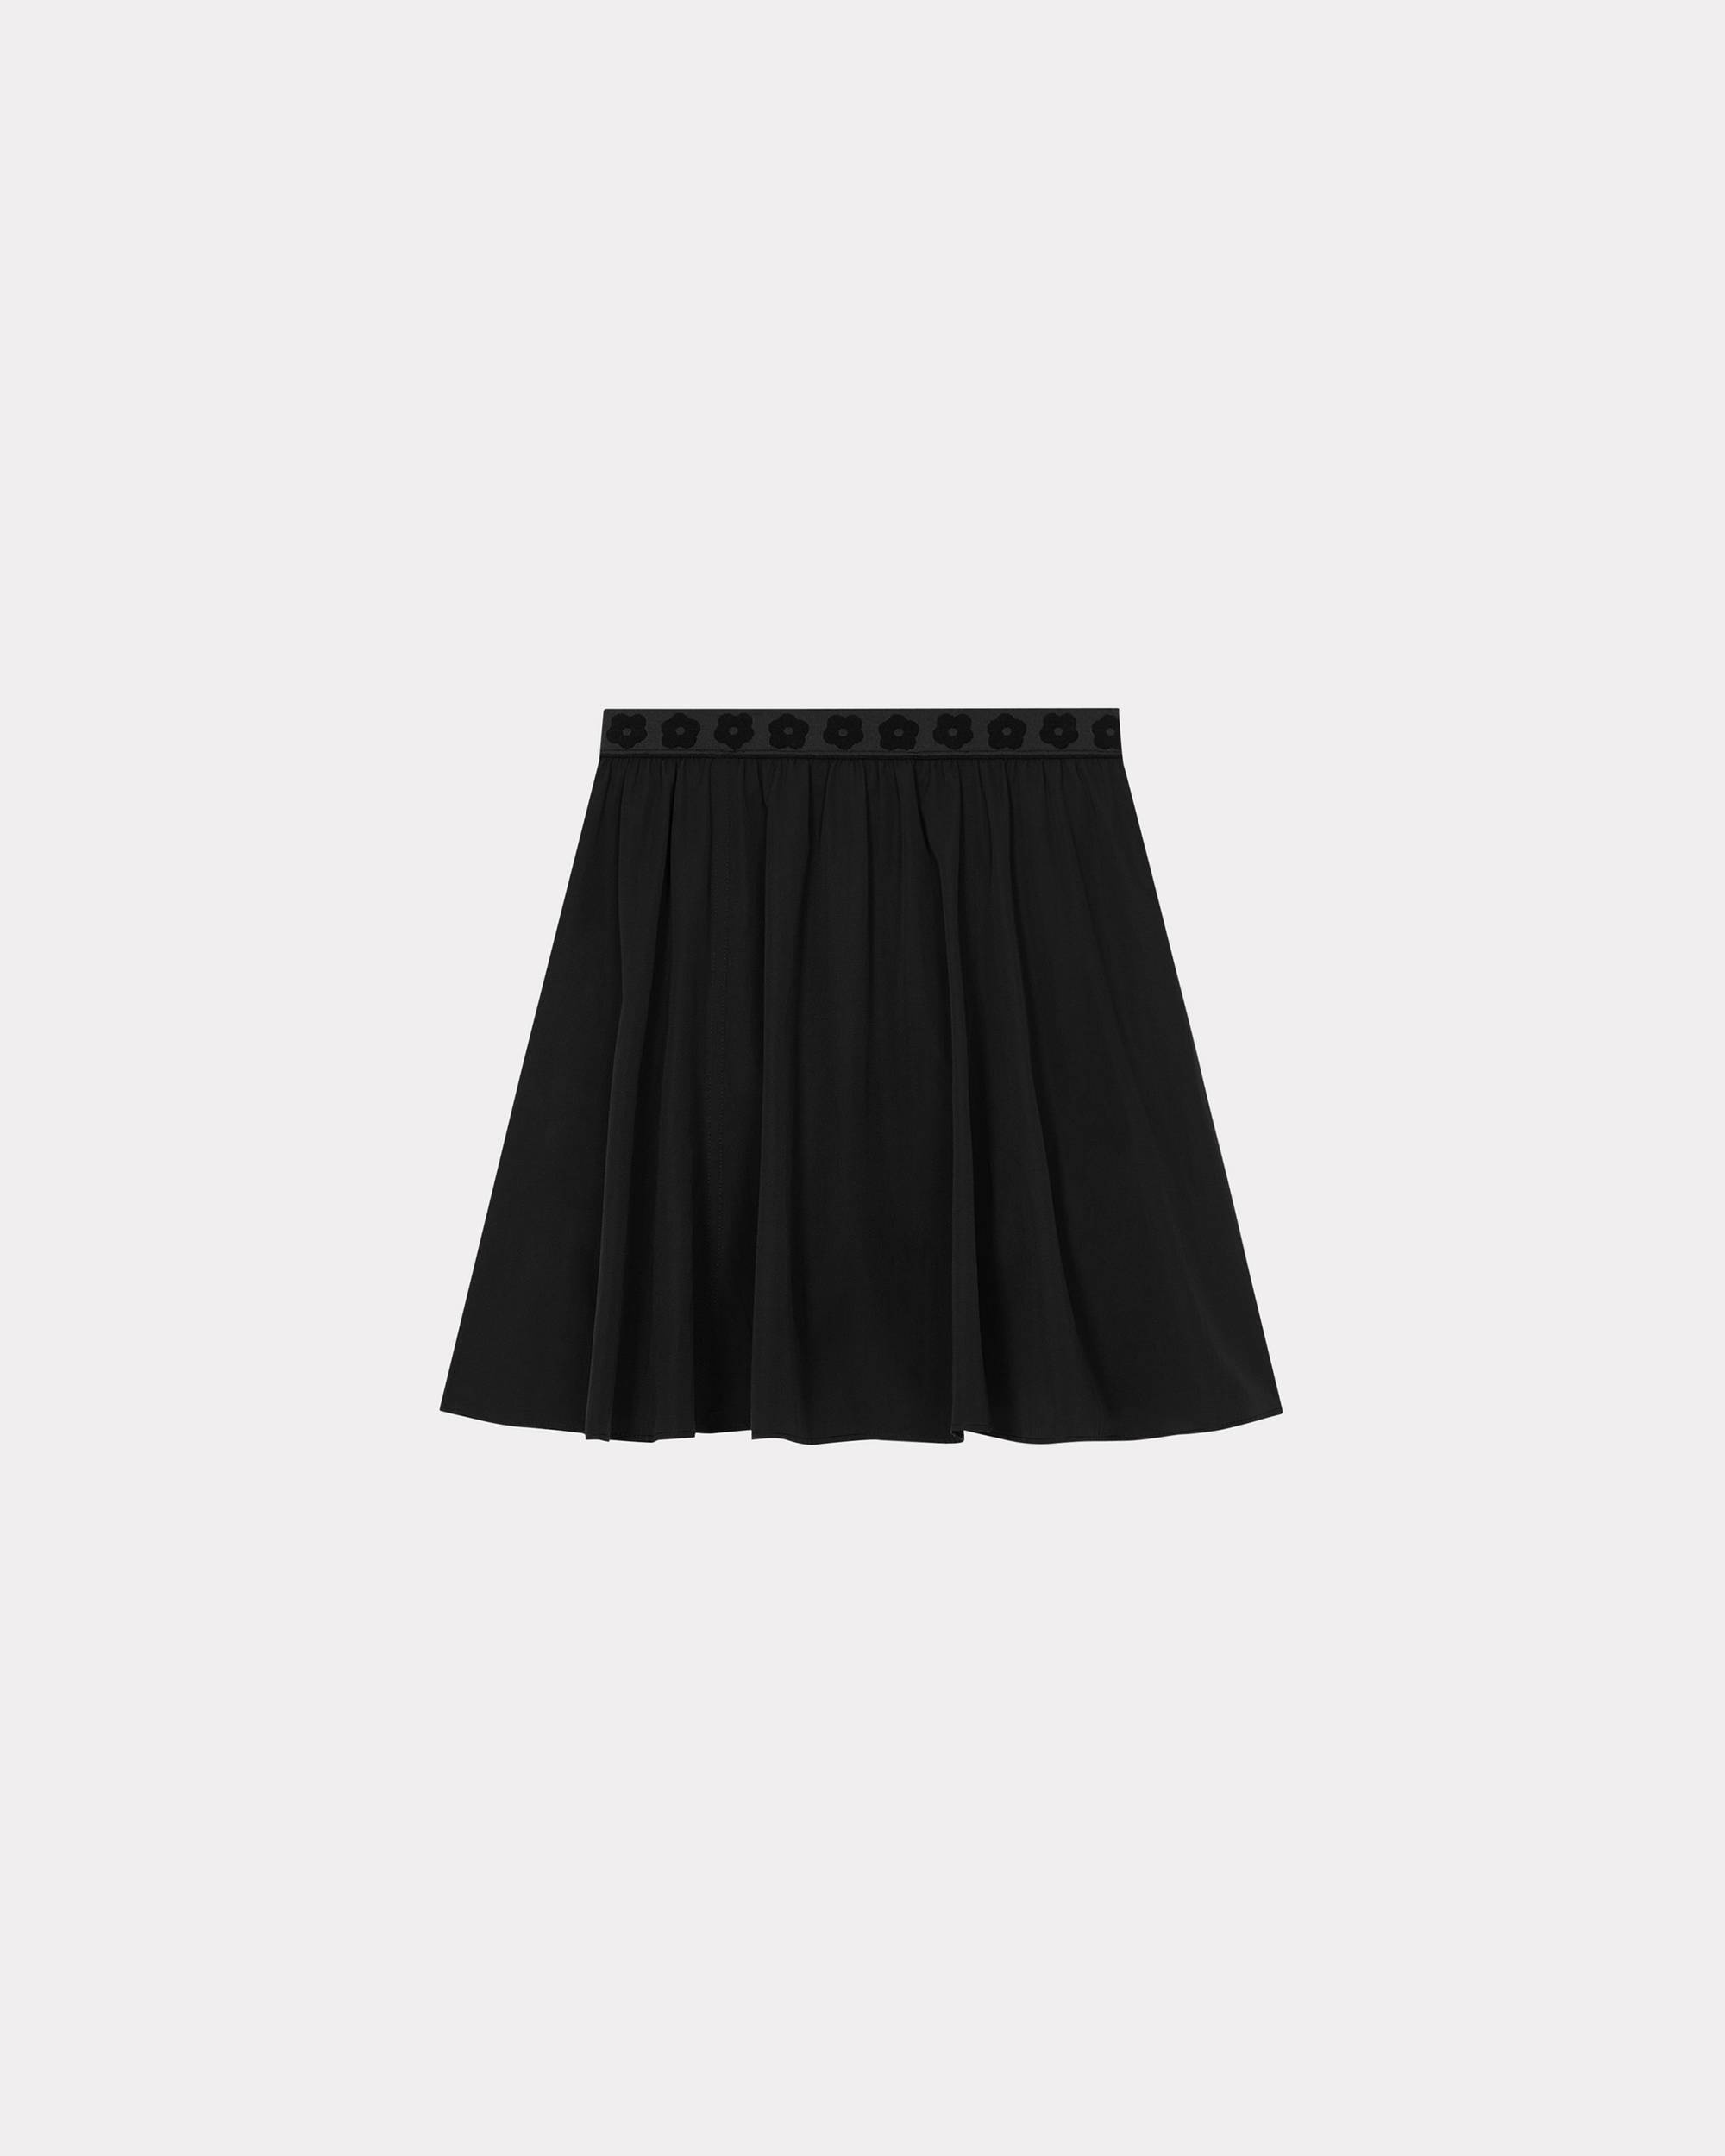 'Boke 2.0' short skirt - 2